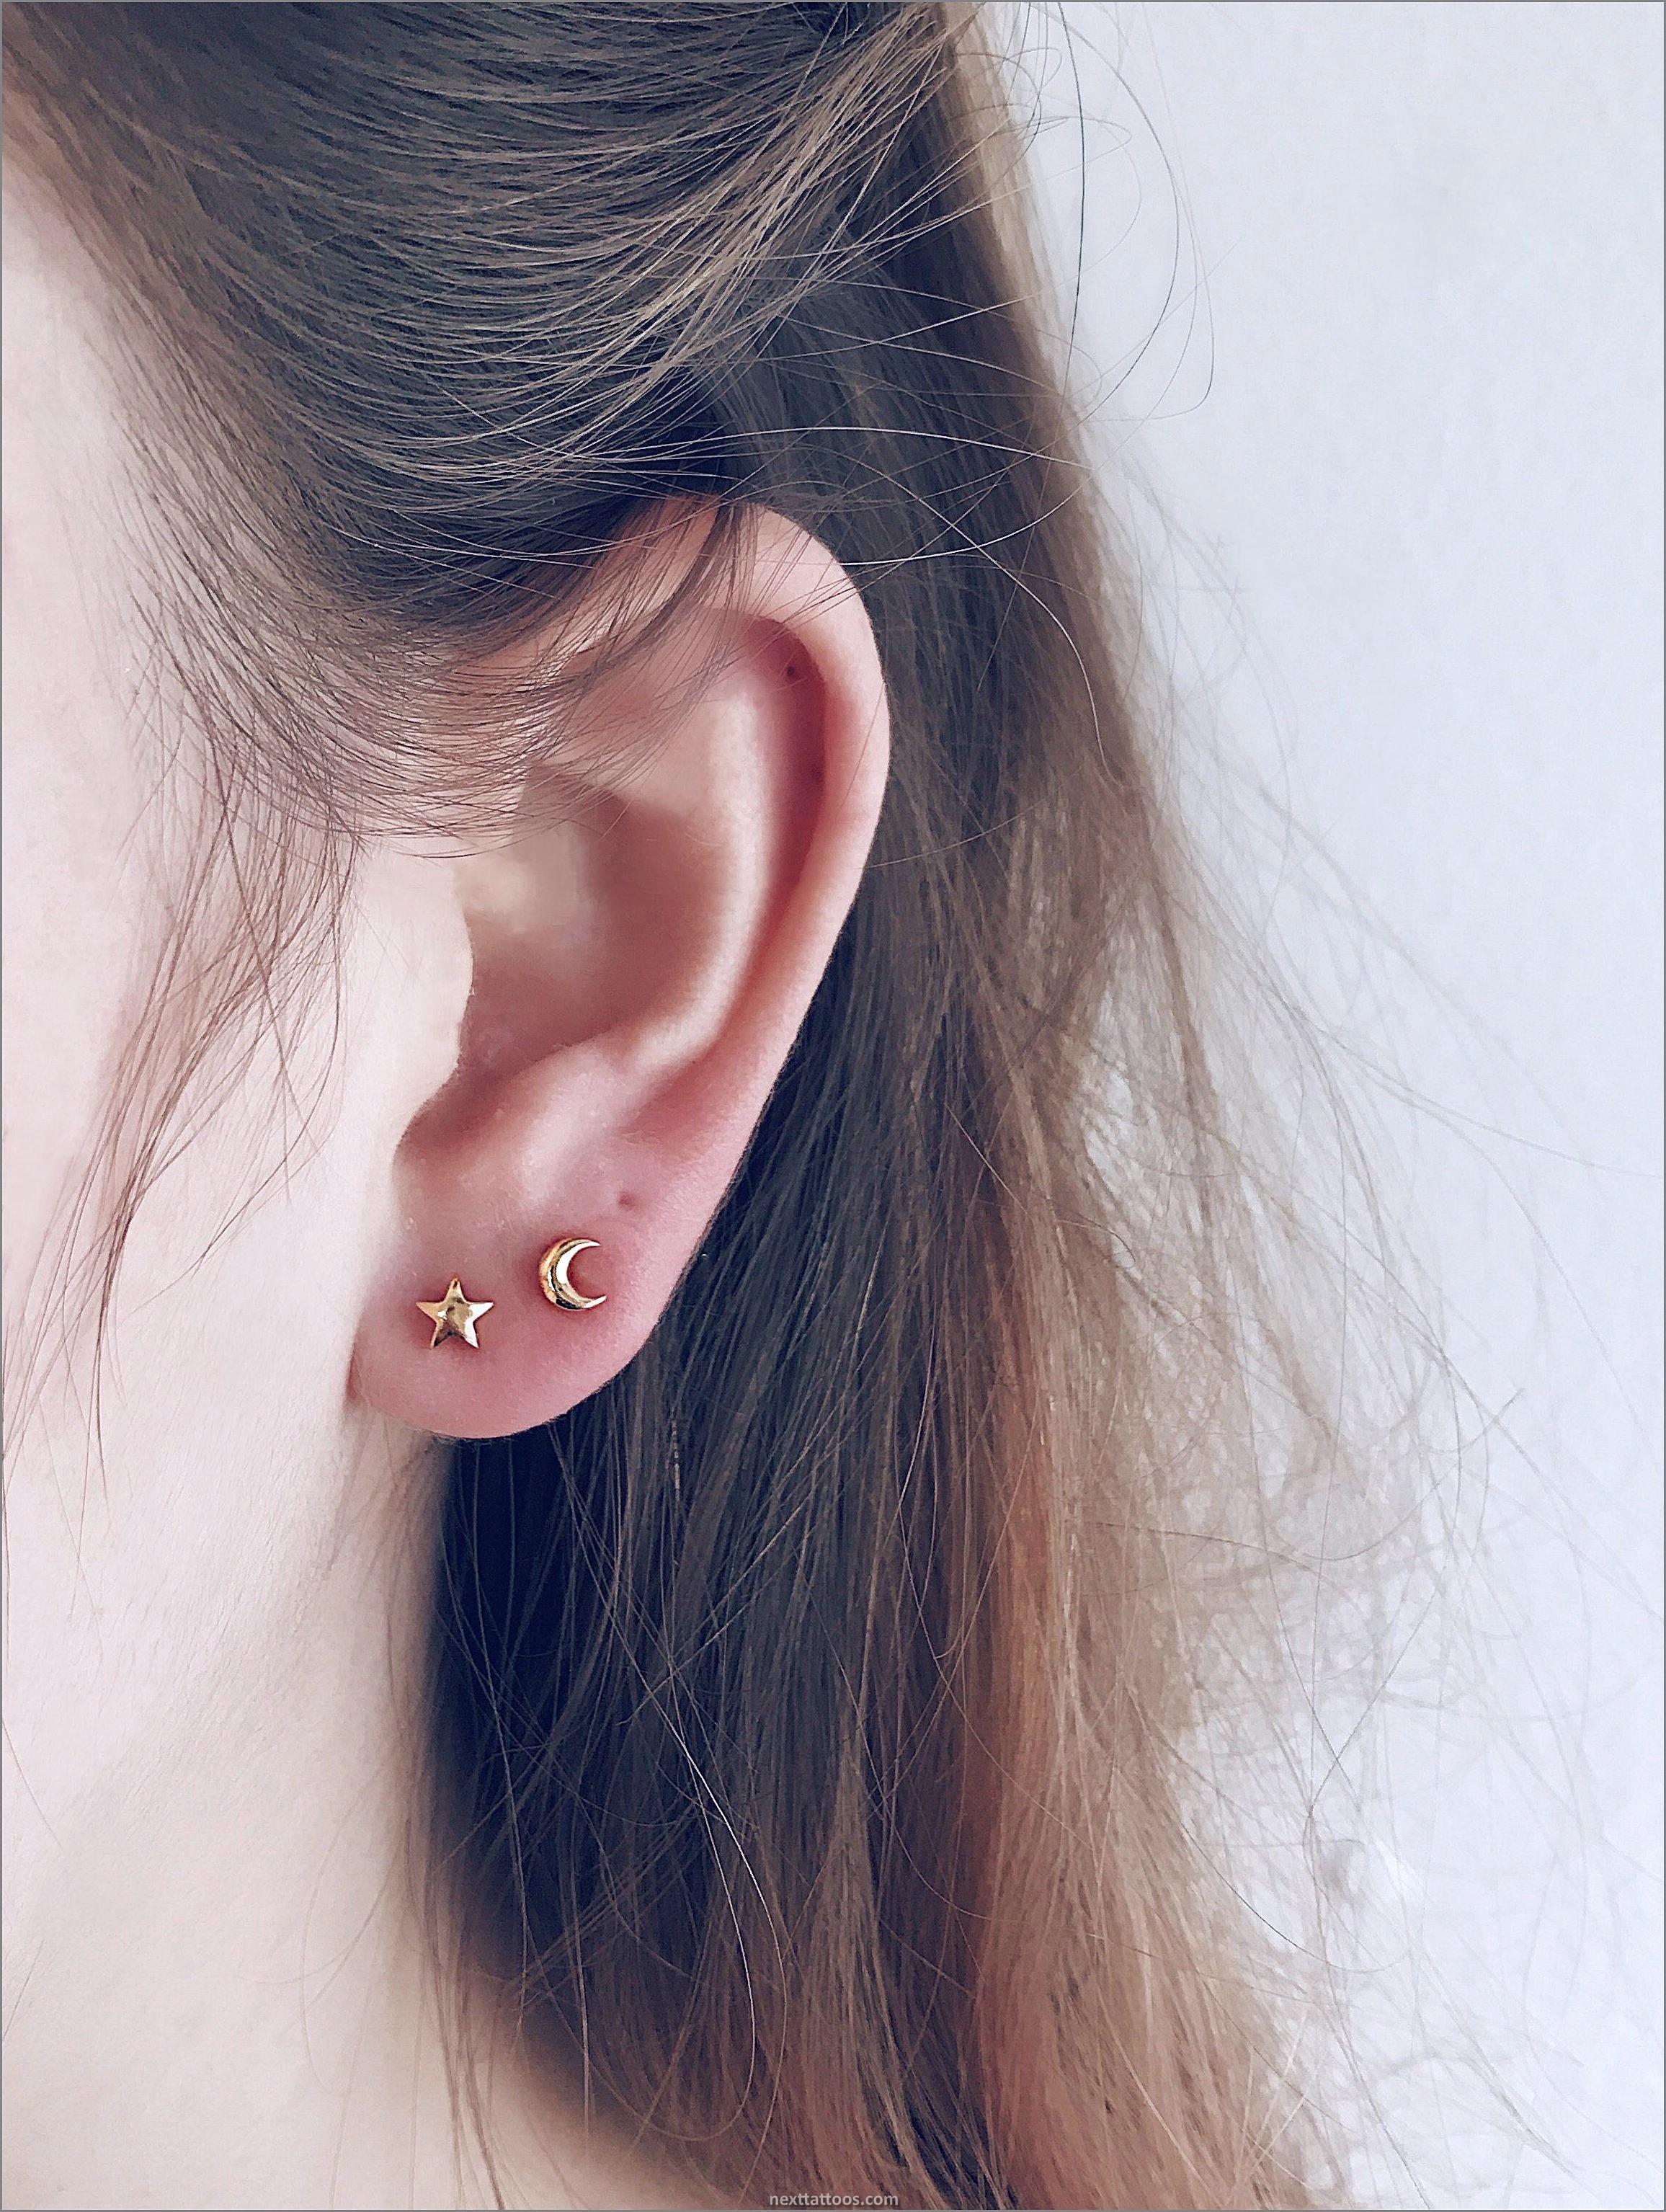 2nd Ear Piercing Ideas